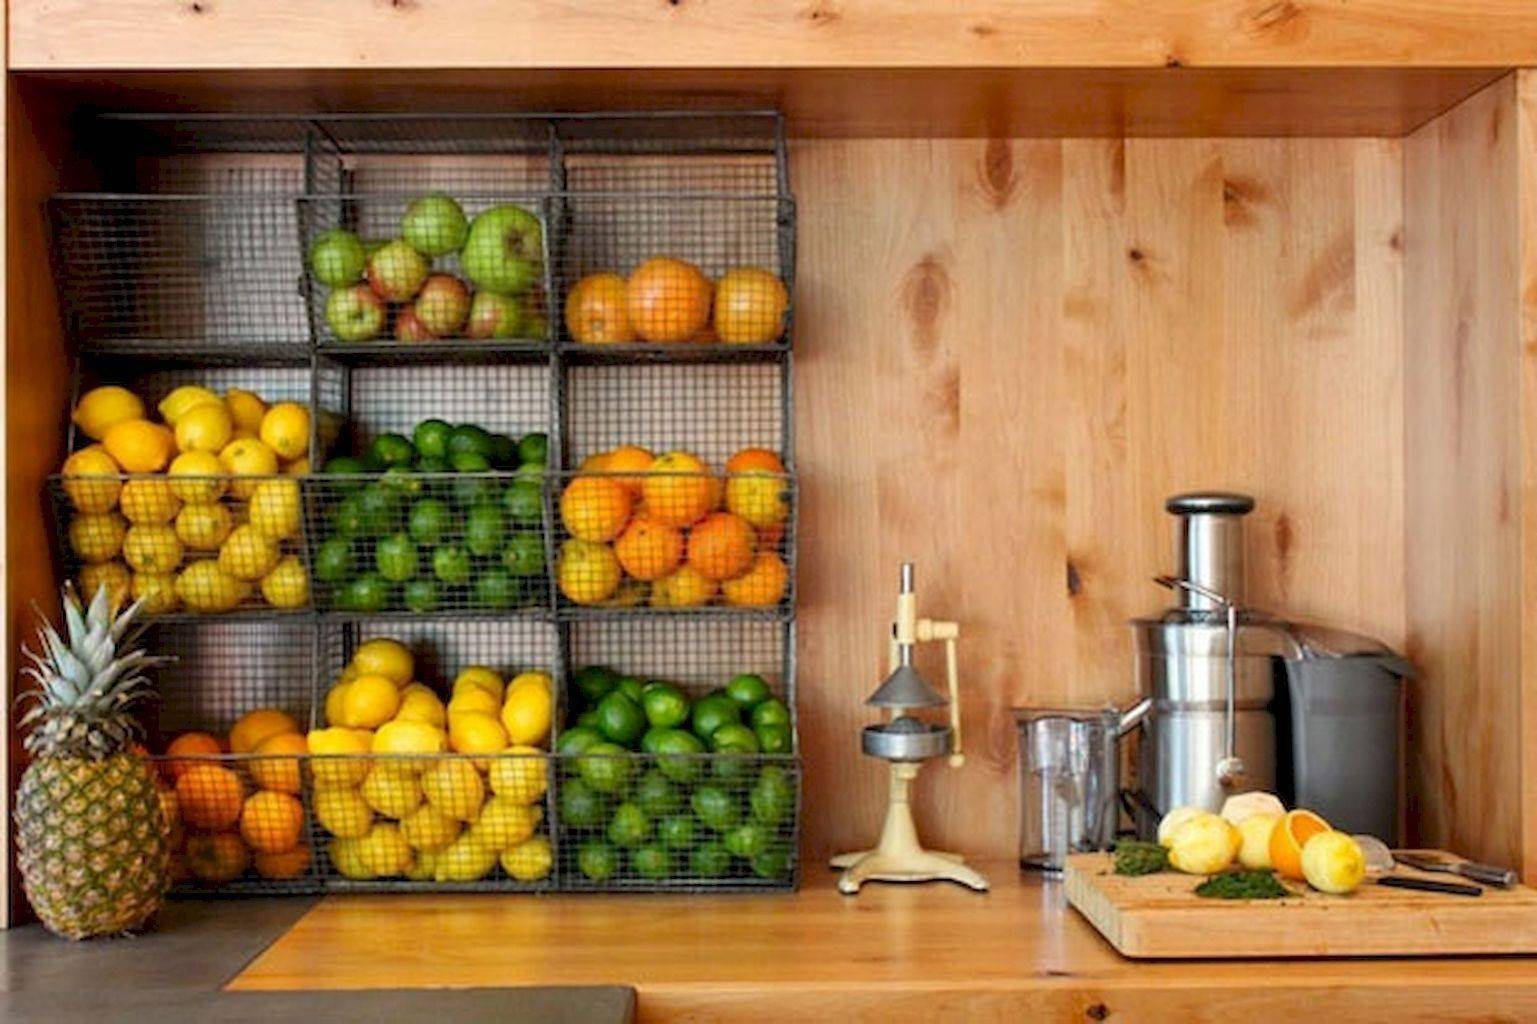 Хранение овощей на кухне: правильные условия и контейнеры